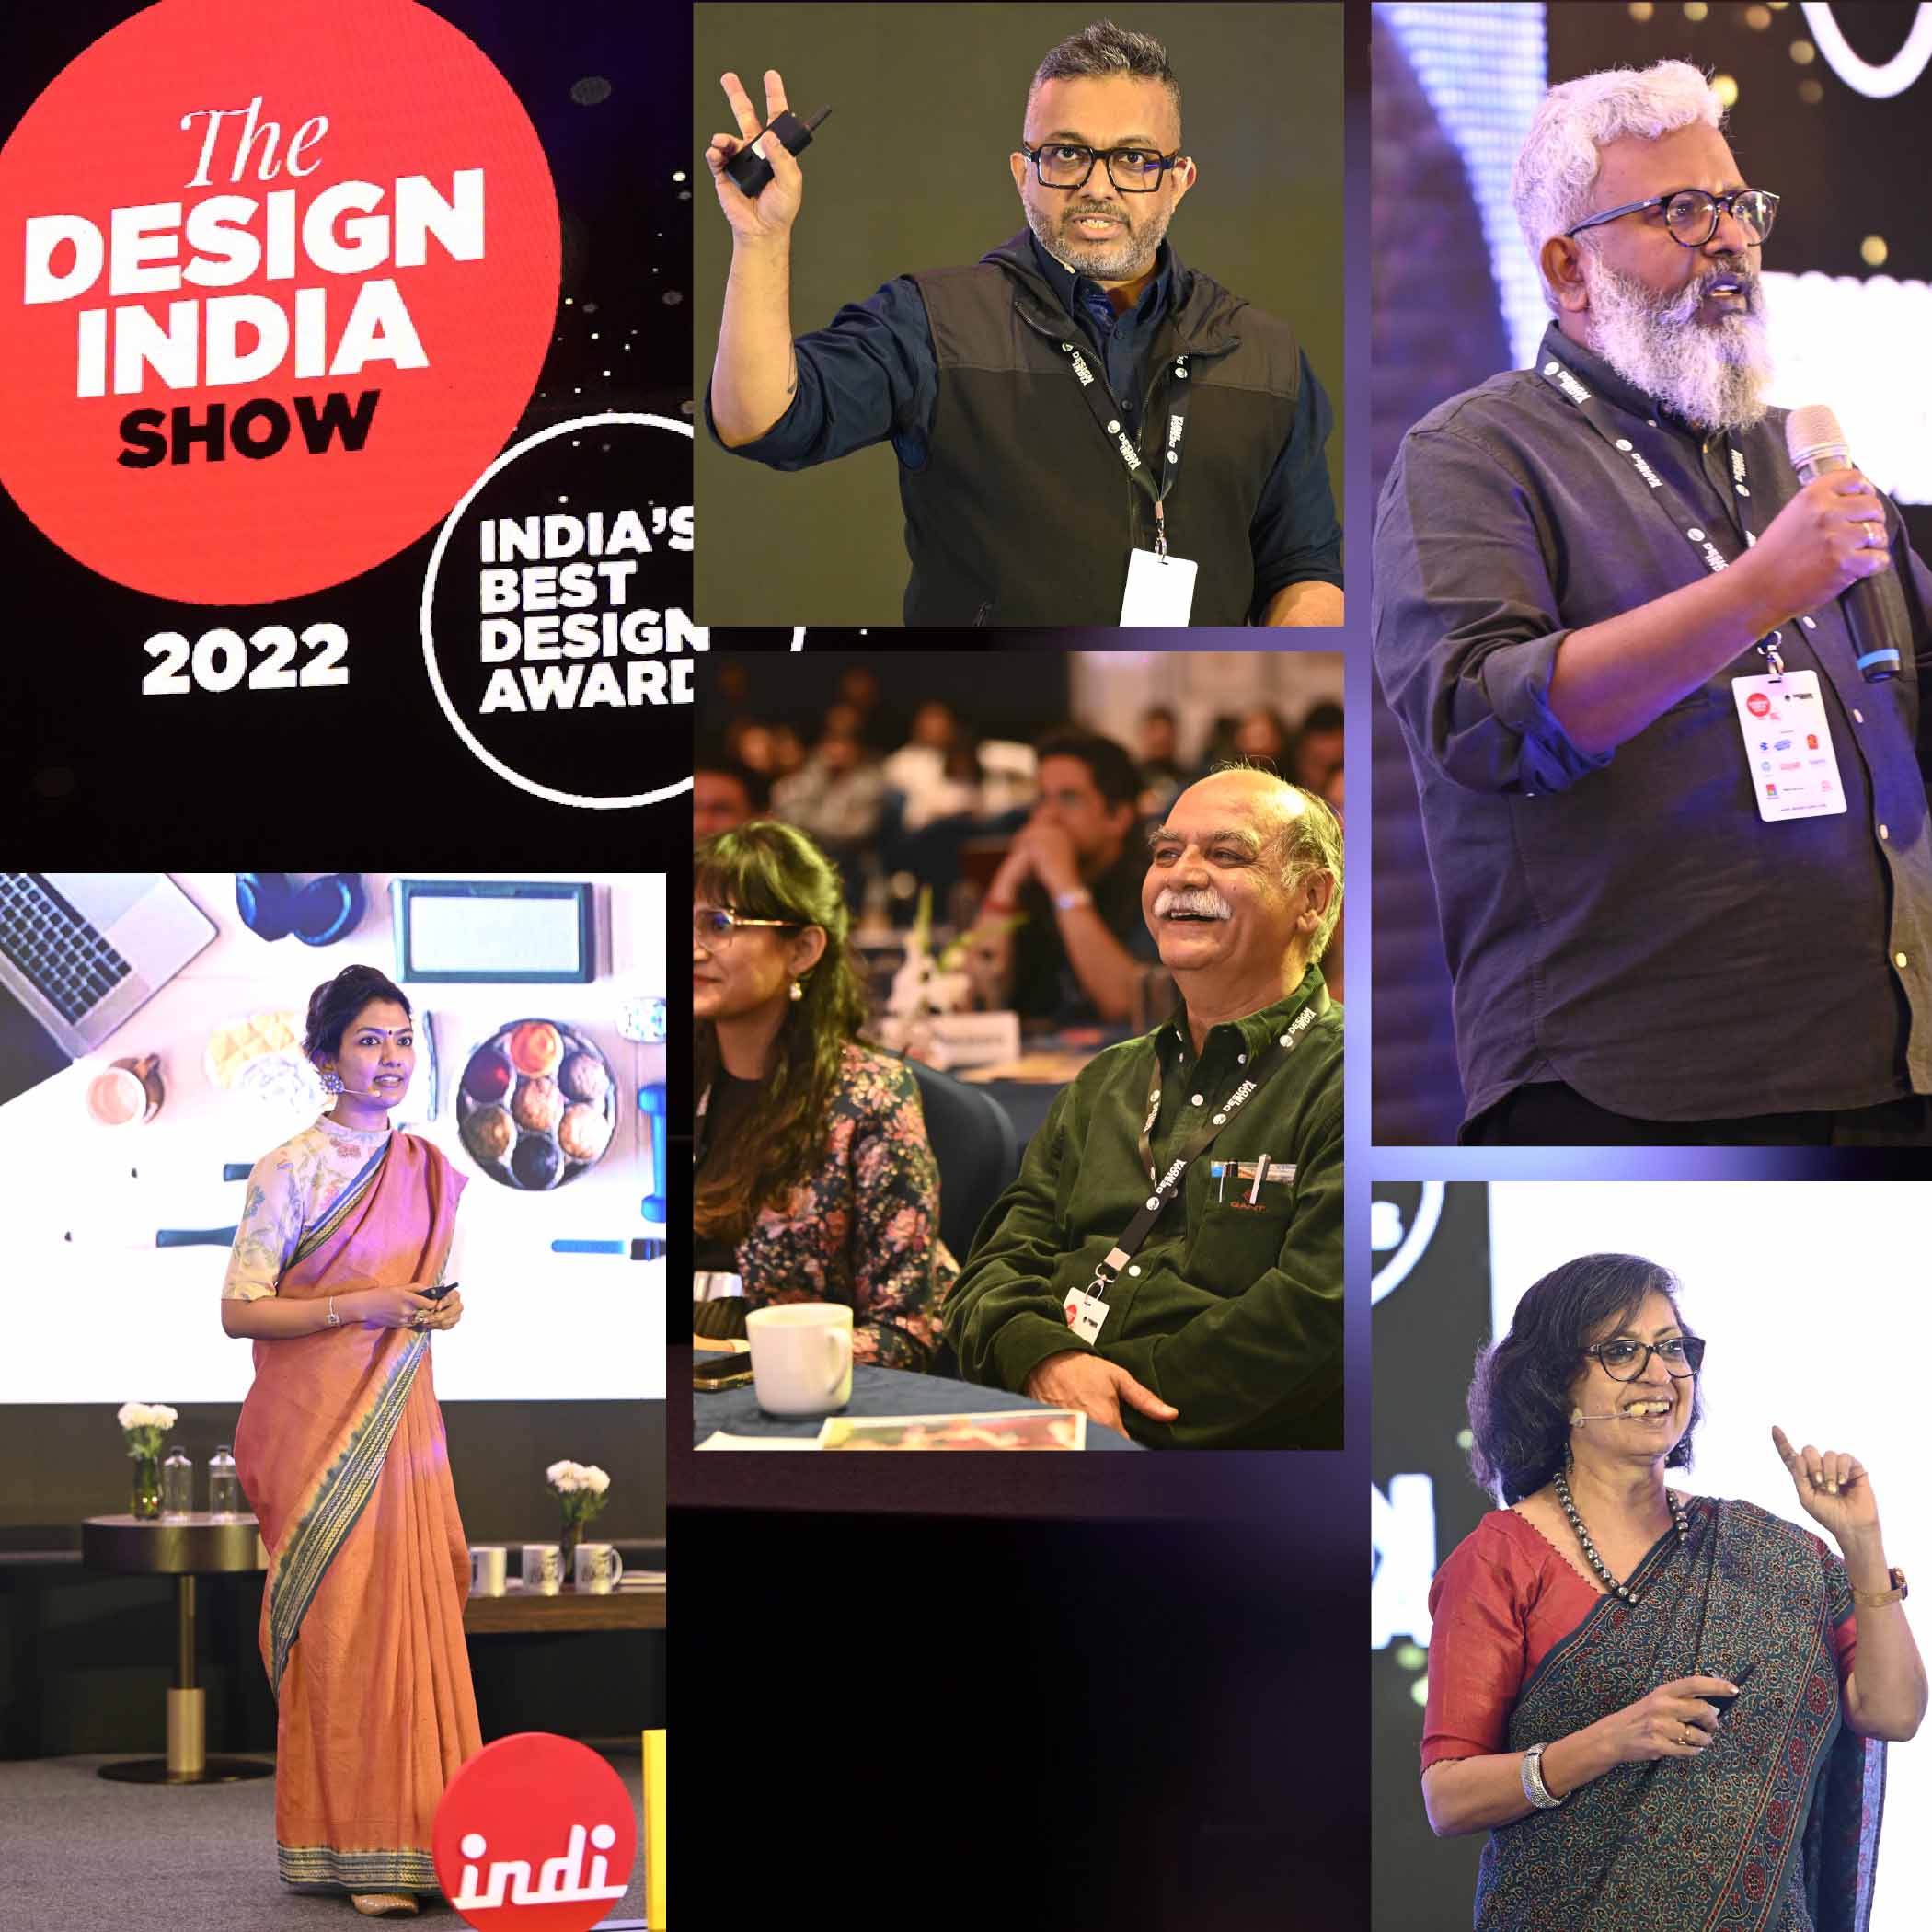 The DesignIndia Show